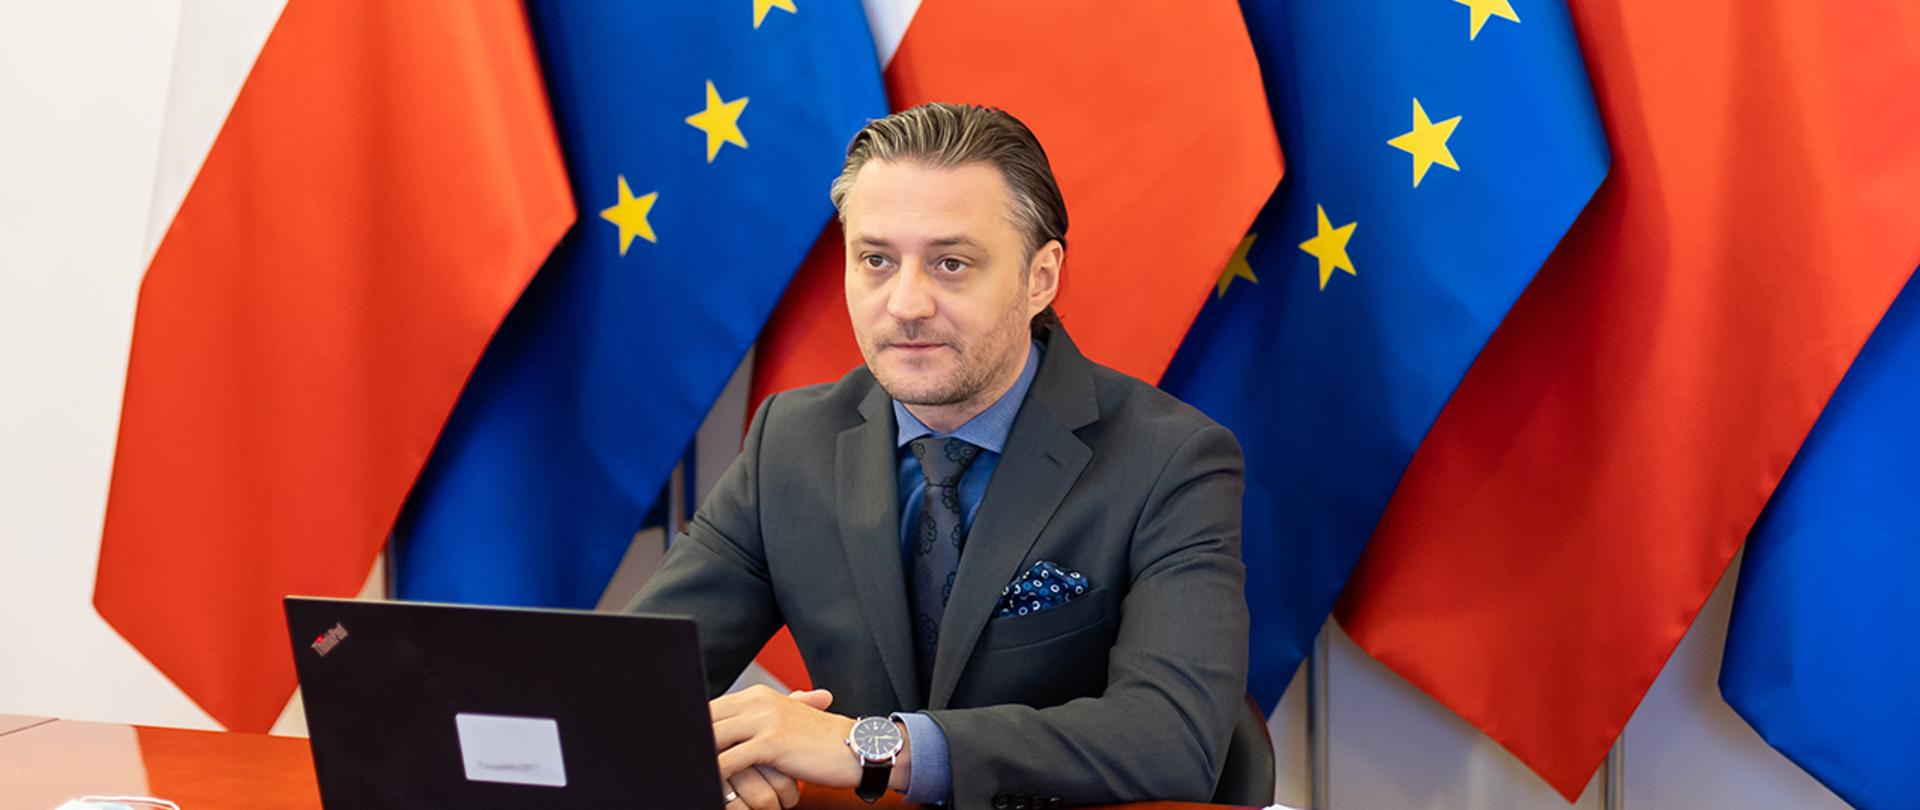 Wiceminister Bartosz Grodecki podczas wideokonferencji. W tle flagi Polski i UE